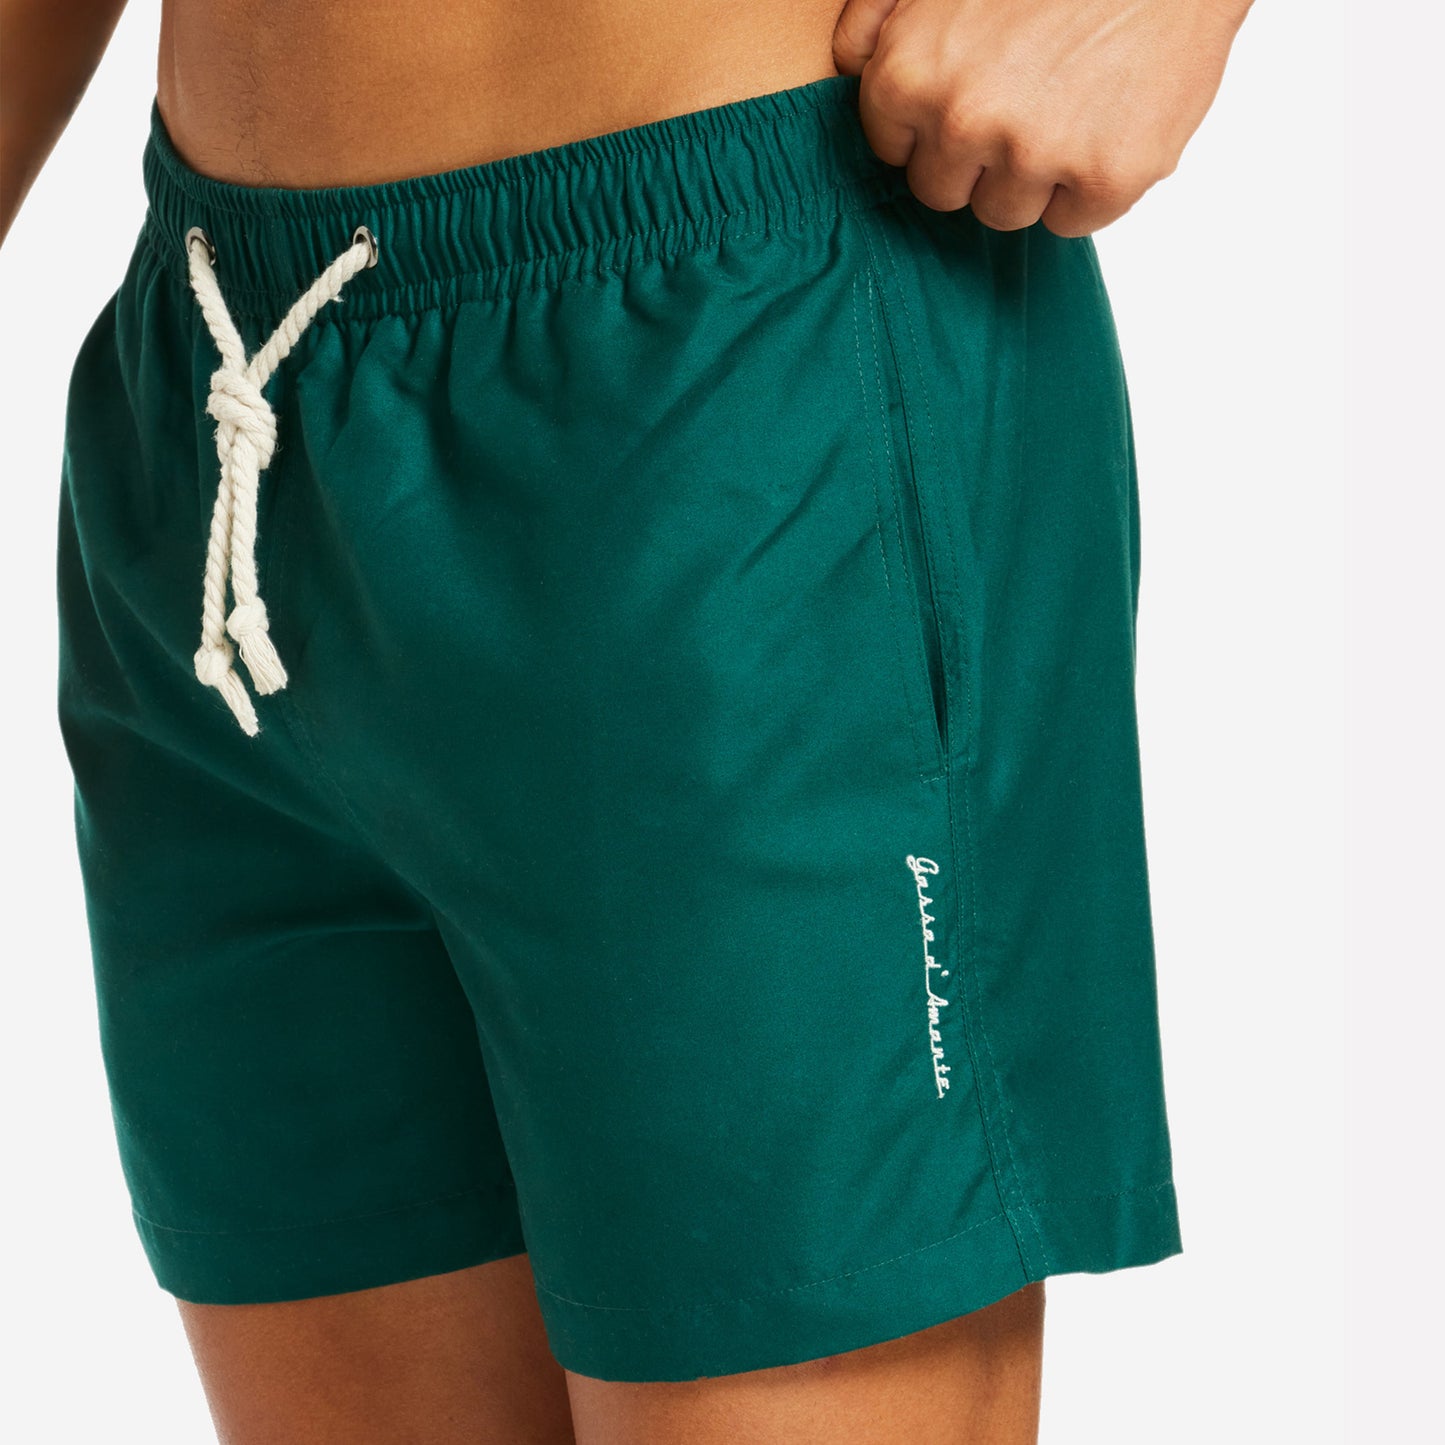 Sustainable Men's Swimsuit - Forte dei Marmi Green